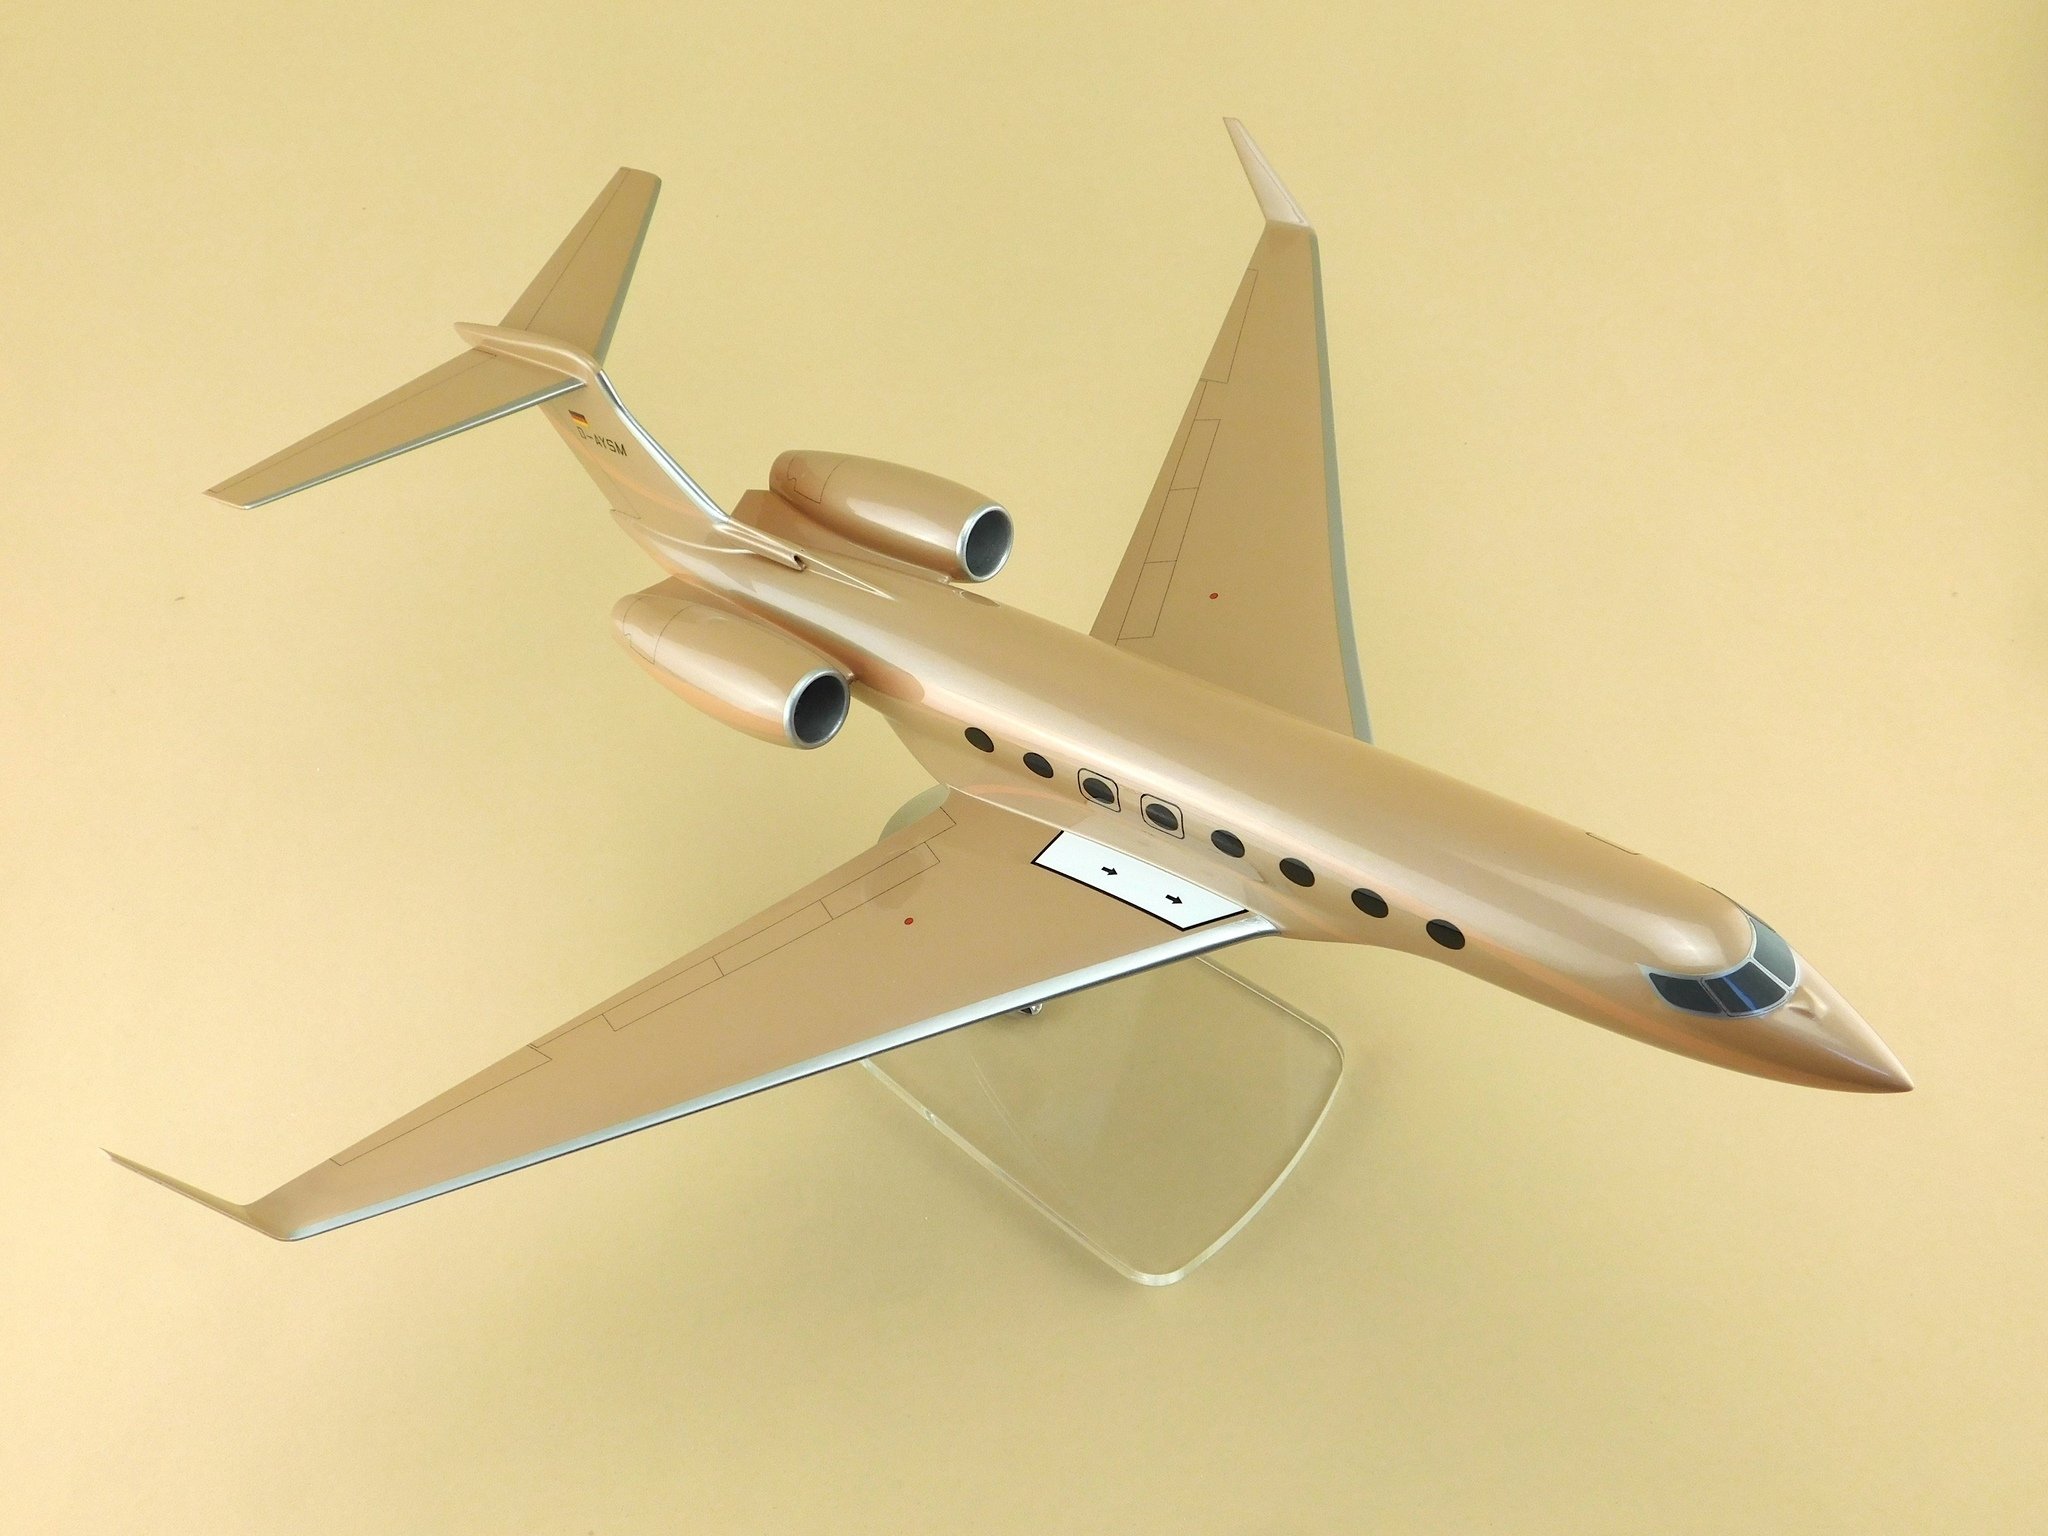 Куплю готовую модель самолета. Авитекс модели самолетов. Макет самолета. Модель самолета Гольфстрим 1:72. Детализированные модели самолётов.